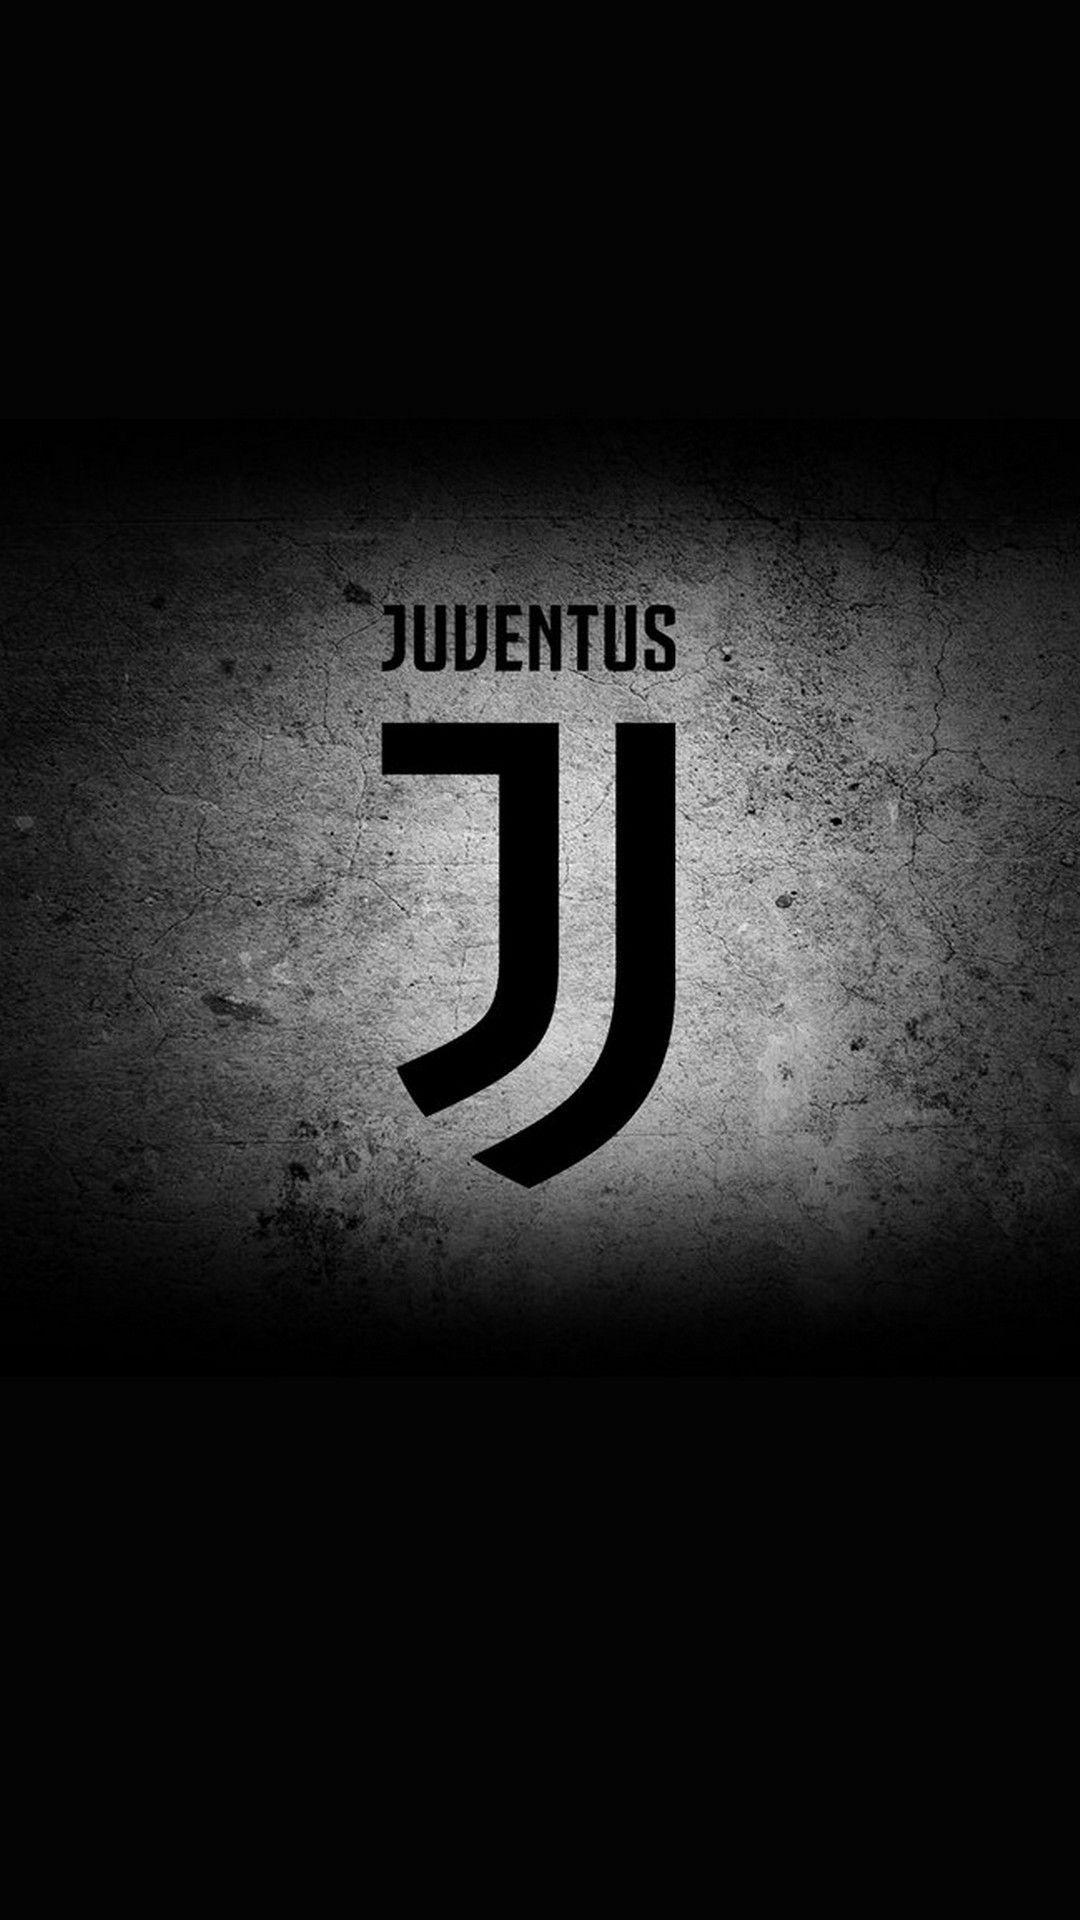 New Logo Juventus iPhone Wallpaper. iPhoneWallpaper. Ronaldo